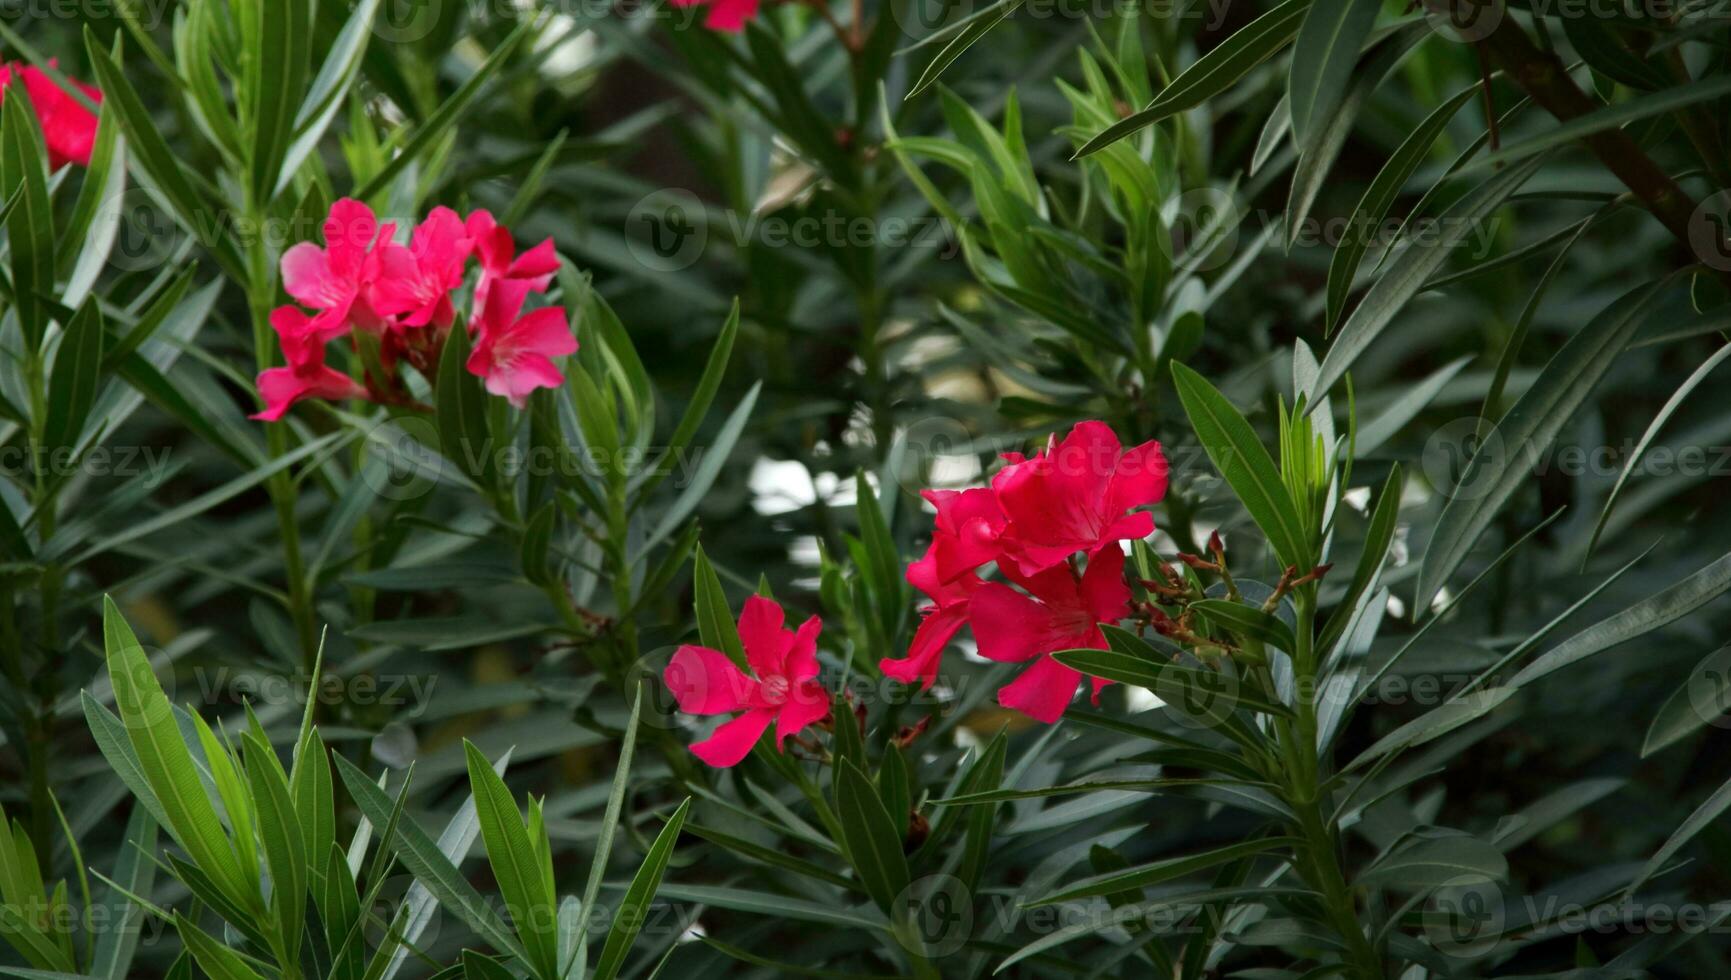 brillante rojo nerium adelfa flores floreciente en manojo y lozano hojas. otro nombre es adelfa, fragante adelfa, Rosa bahía o dulce adelfa. foto